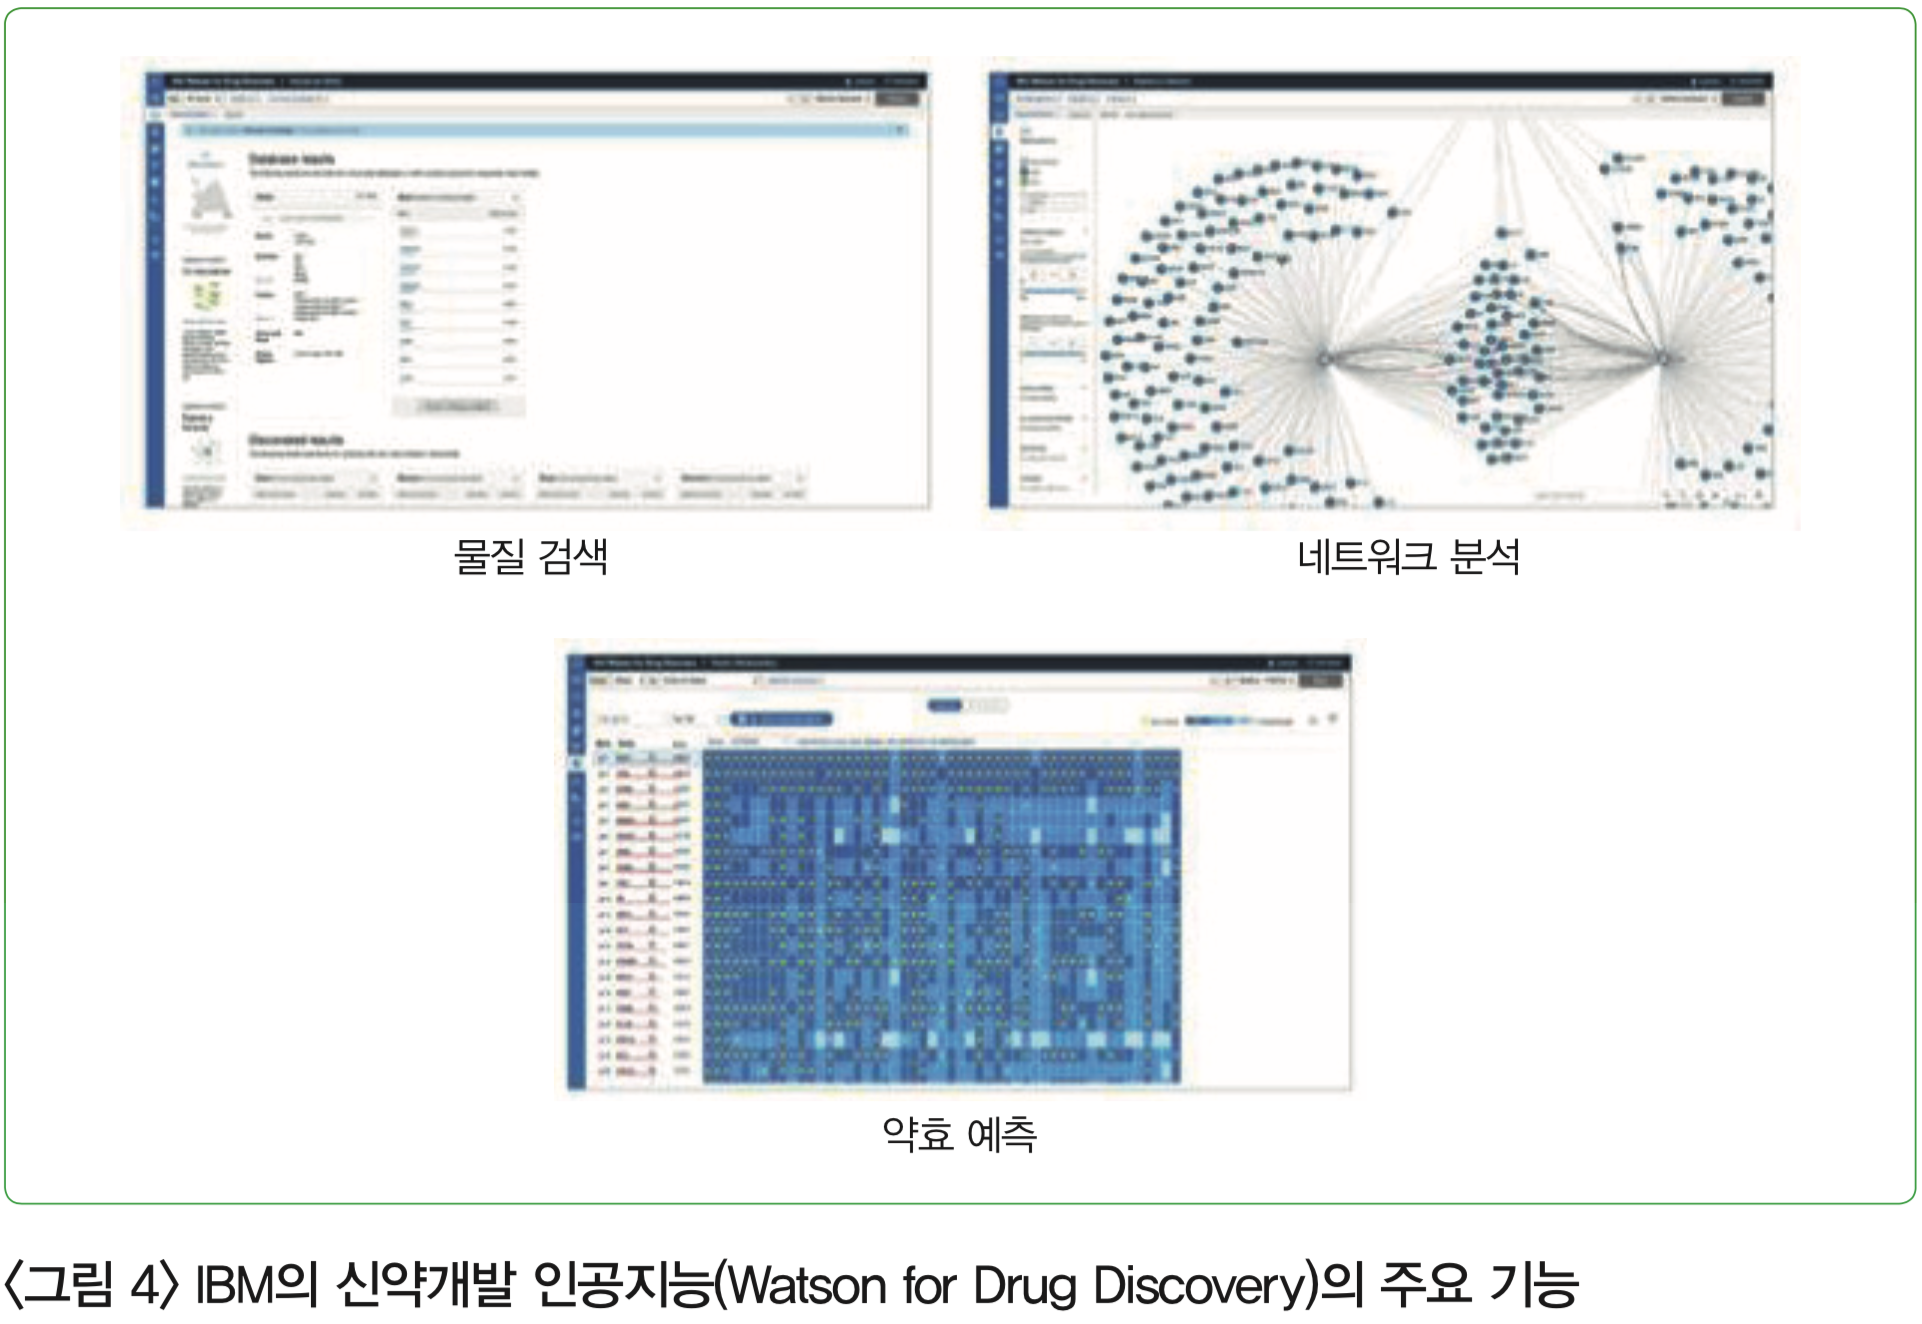 그림4 - IBM의 신약개발 인공지능(Watson for Drug Discovery)의 주요 기능